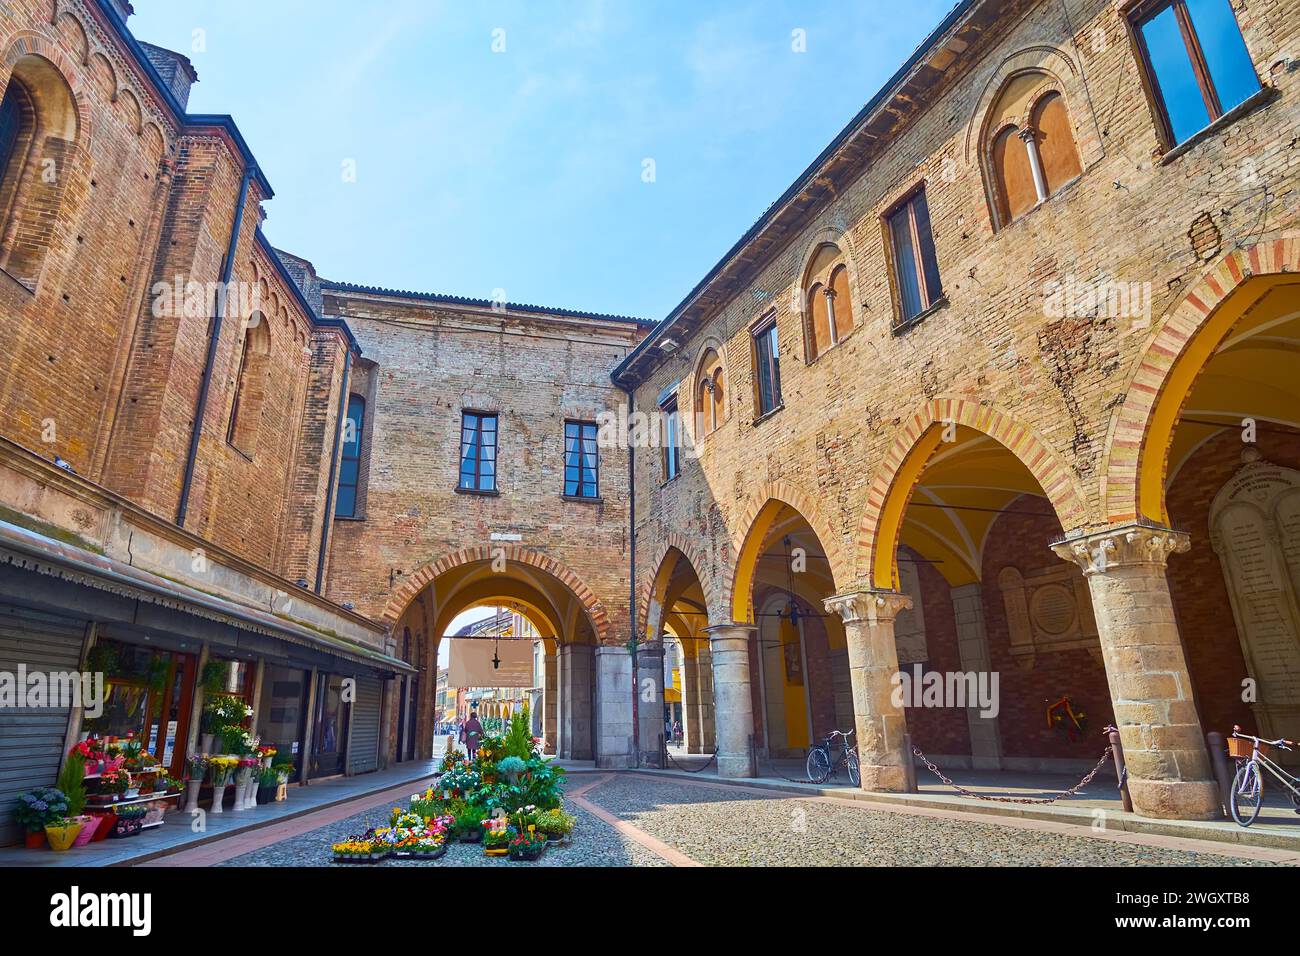 Logement historique sur la petite Piazza Broletto avec belle arcade de Palazzo del Broletto, Lodi, Italie Banque D'Images